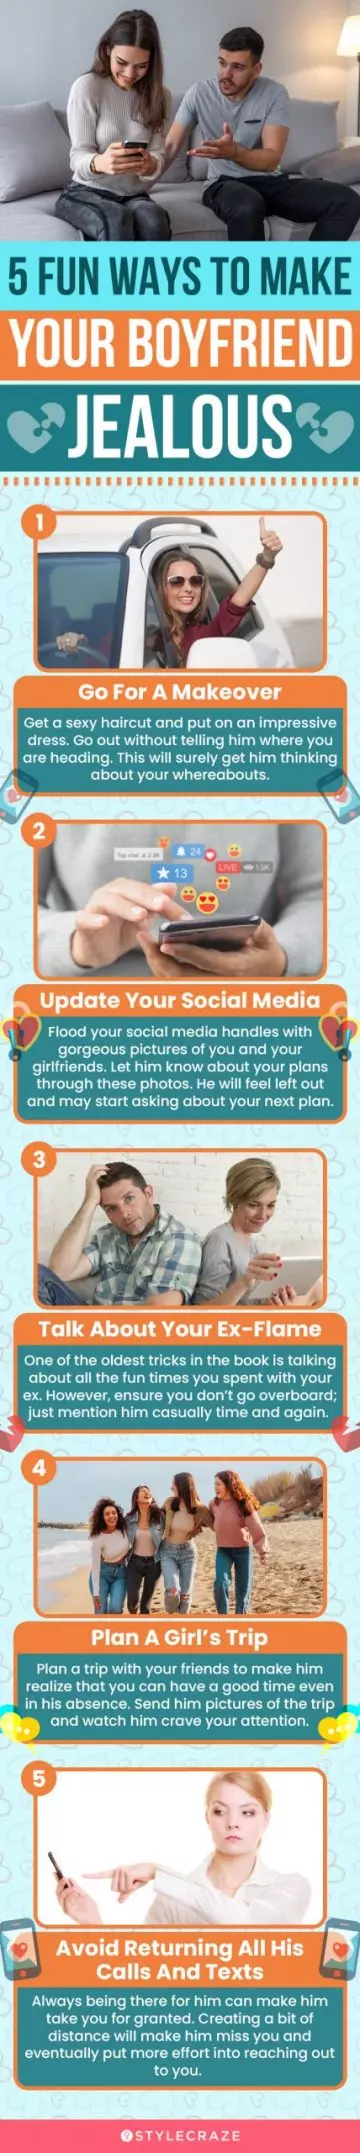 5 fun ways to make your boyfriend jealous (infographic)